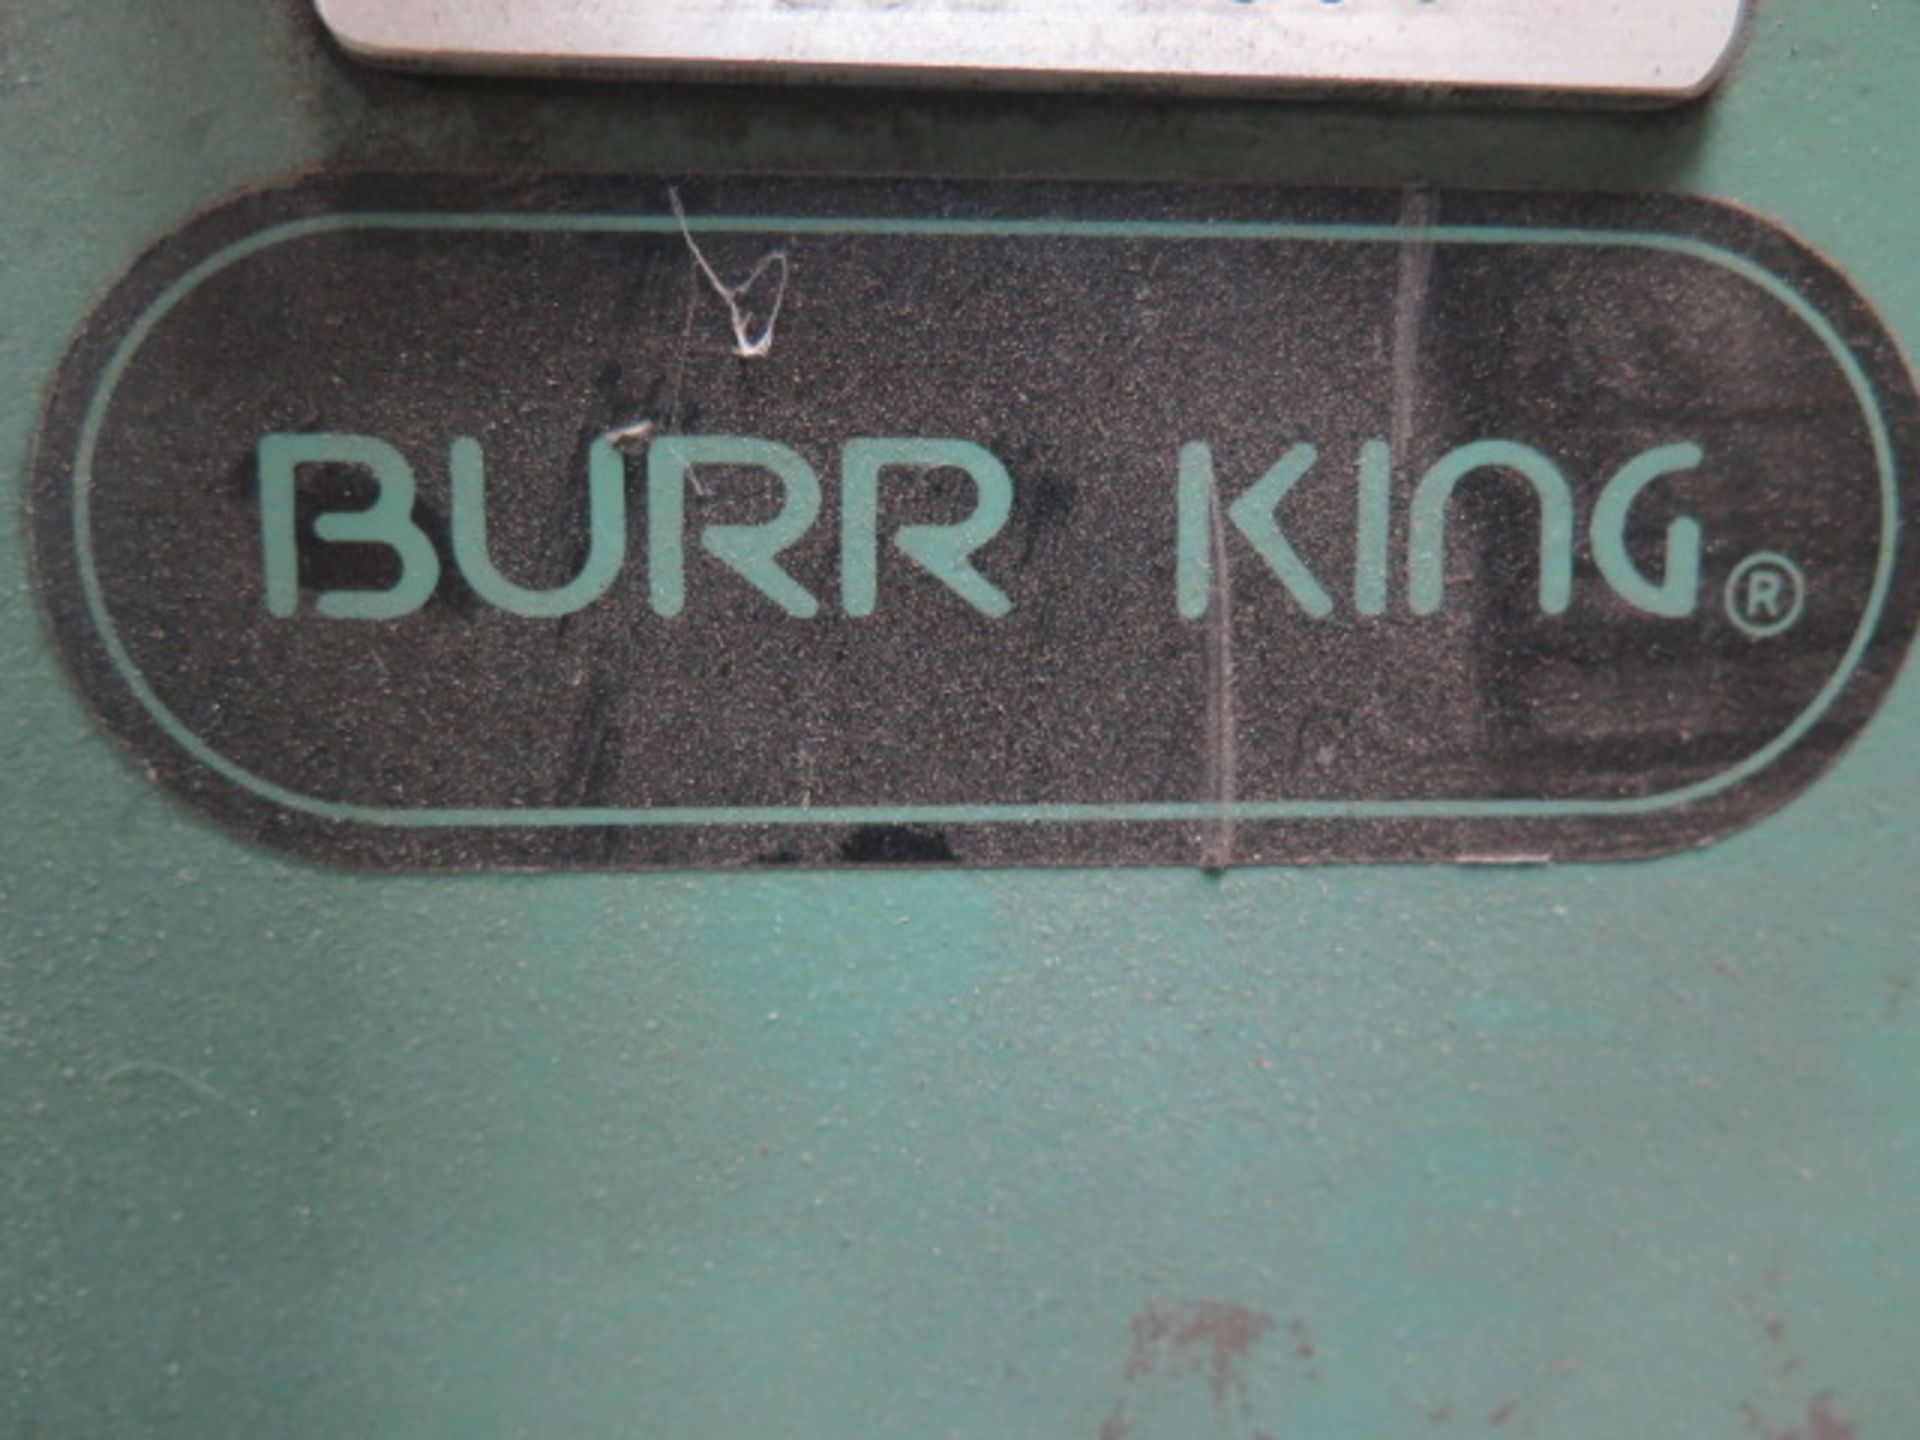 Burr King 2 ½” Pedestal Belt Sander (SOLD AS-IS - NO WARRANTY) - Image 6 of 6